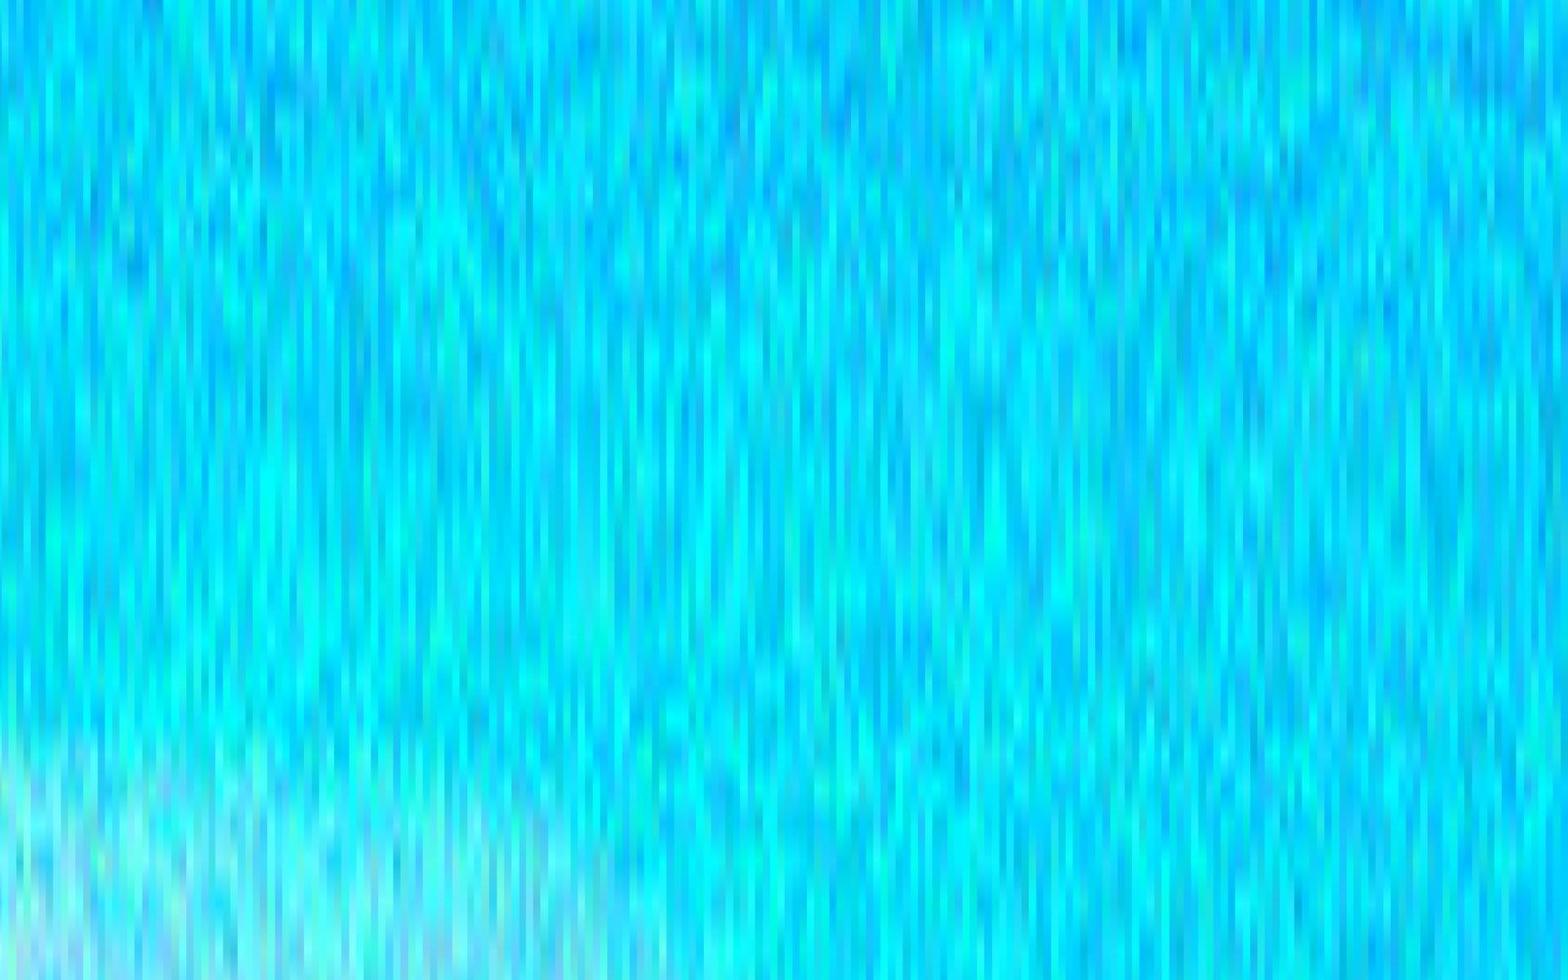 ljusblå vektor bakgrund med långa rader.